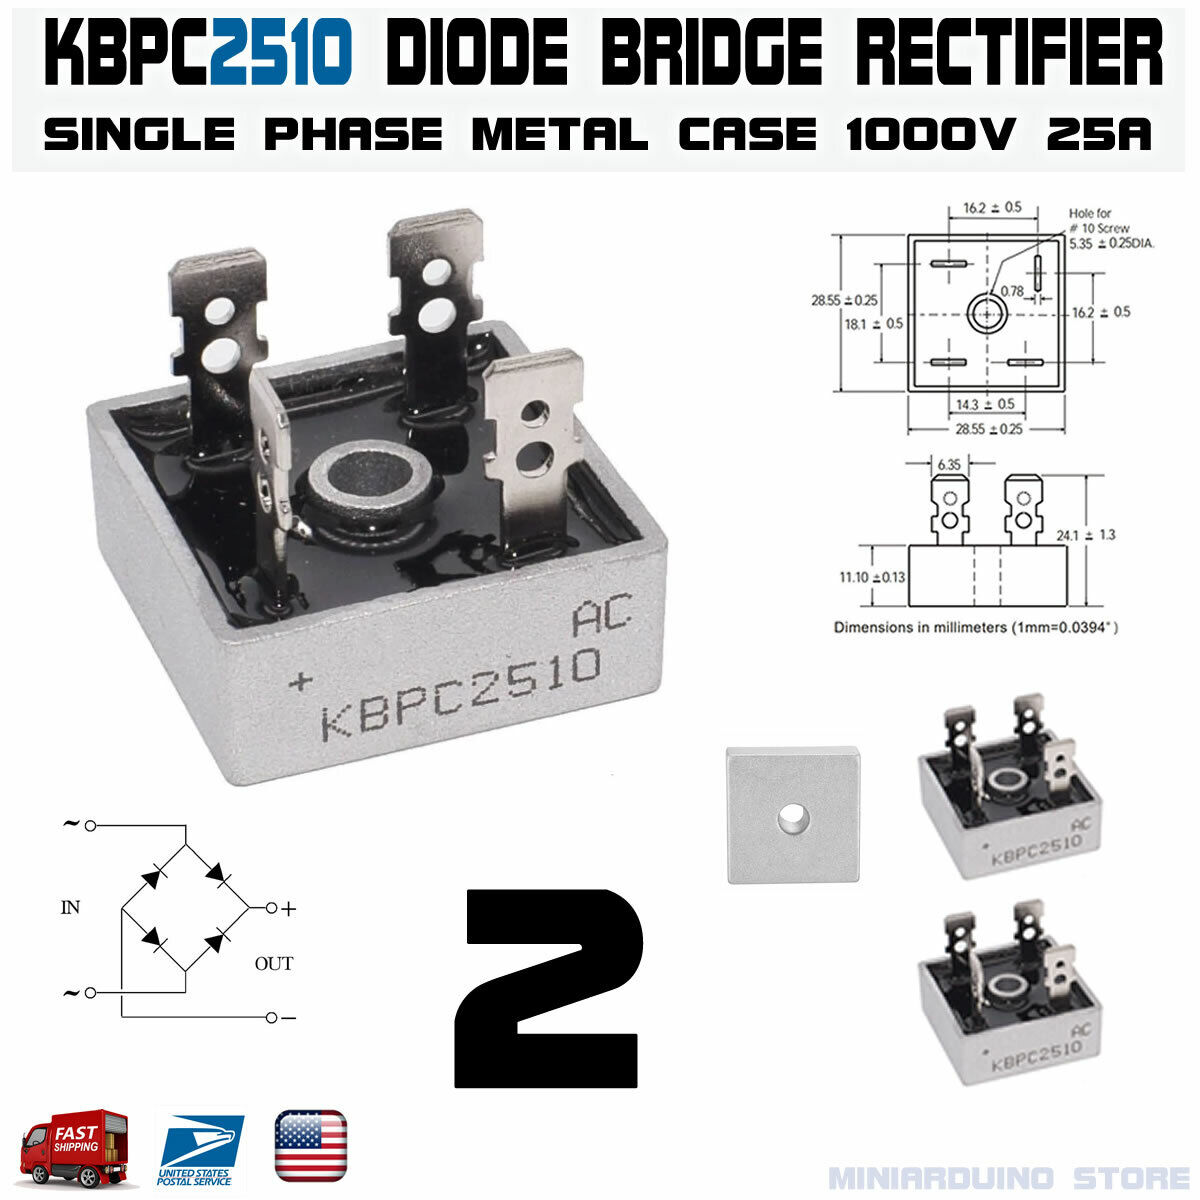 2pcs KBPC2510 Diode Bridge Rectifier Single Phase Metal Case 1000V 25A KBPC-2510